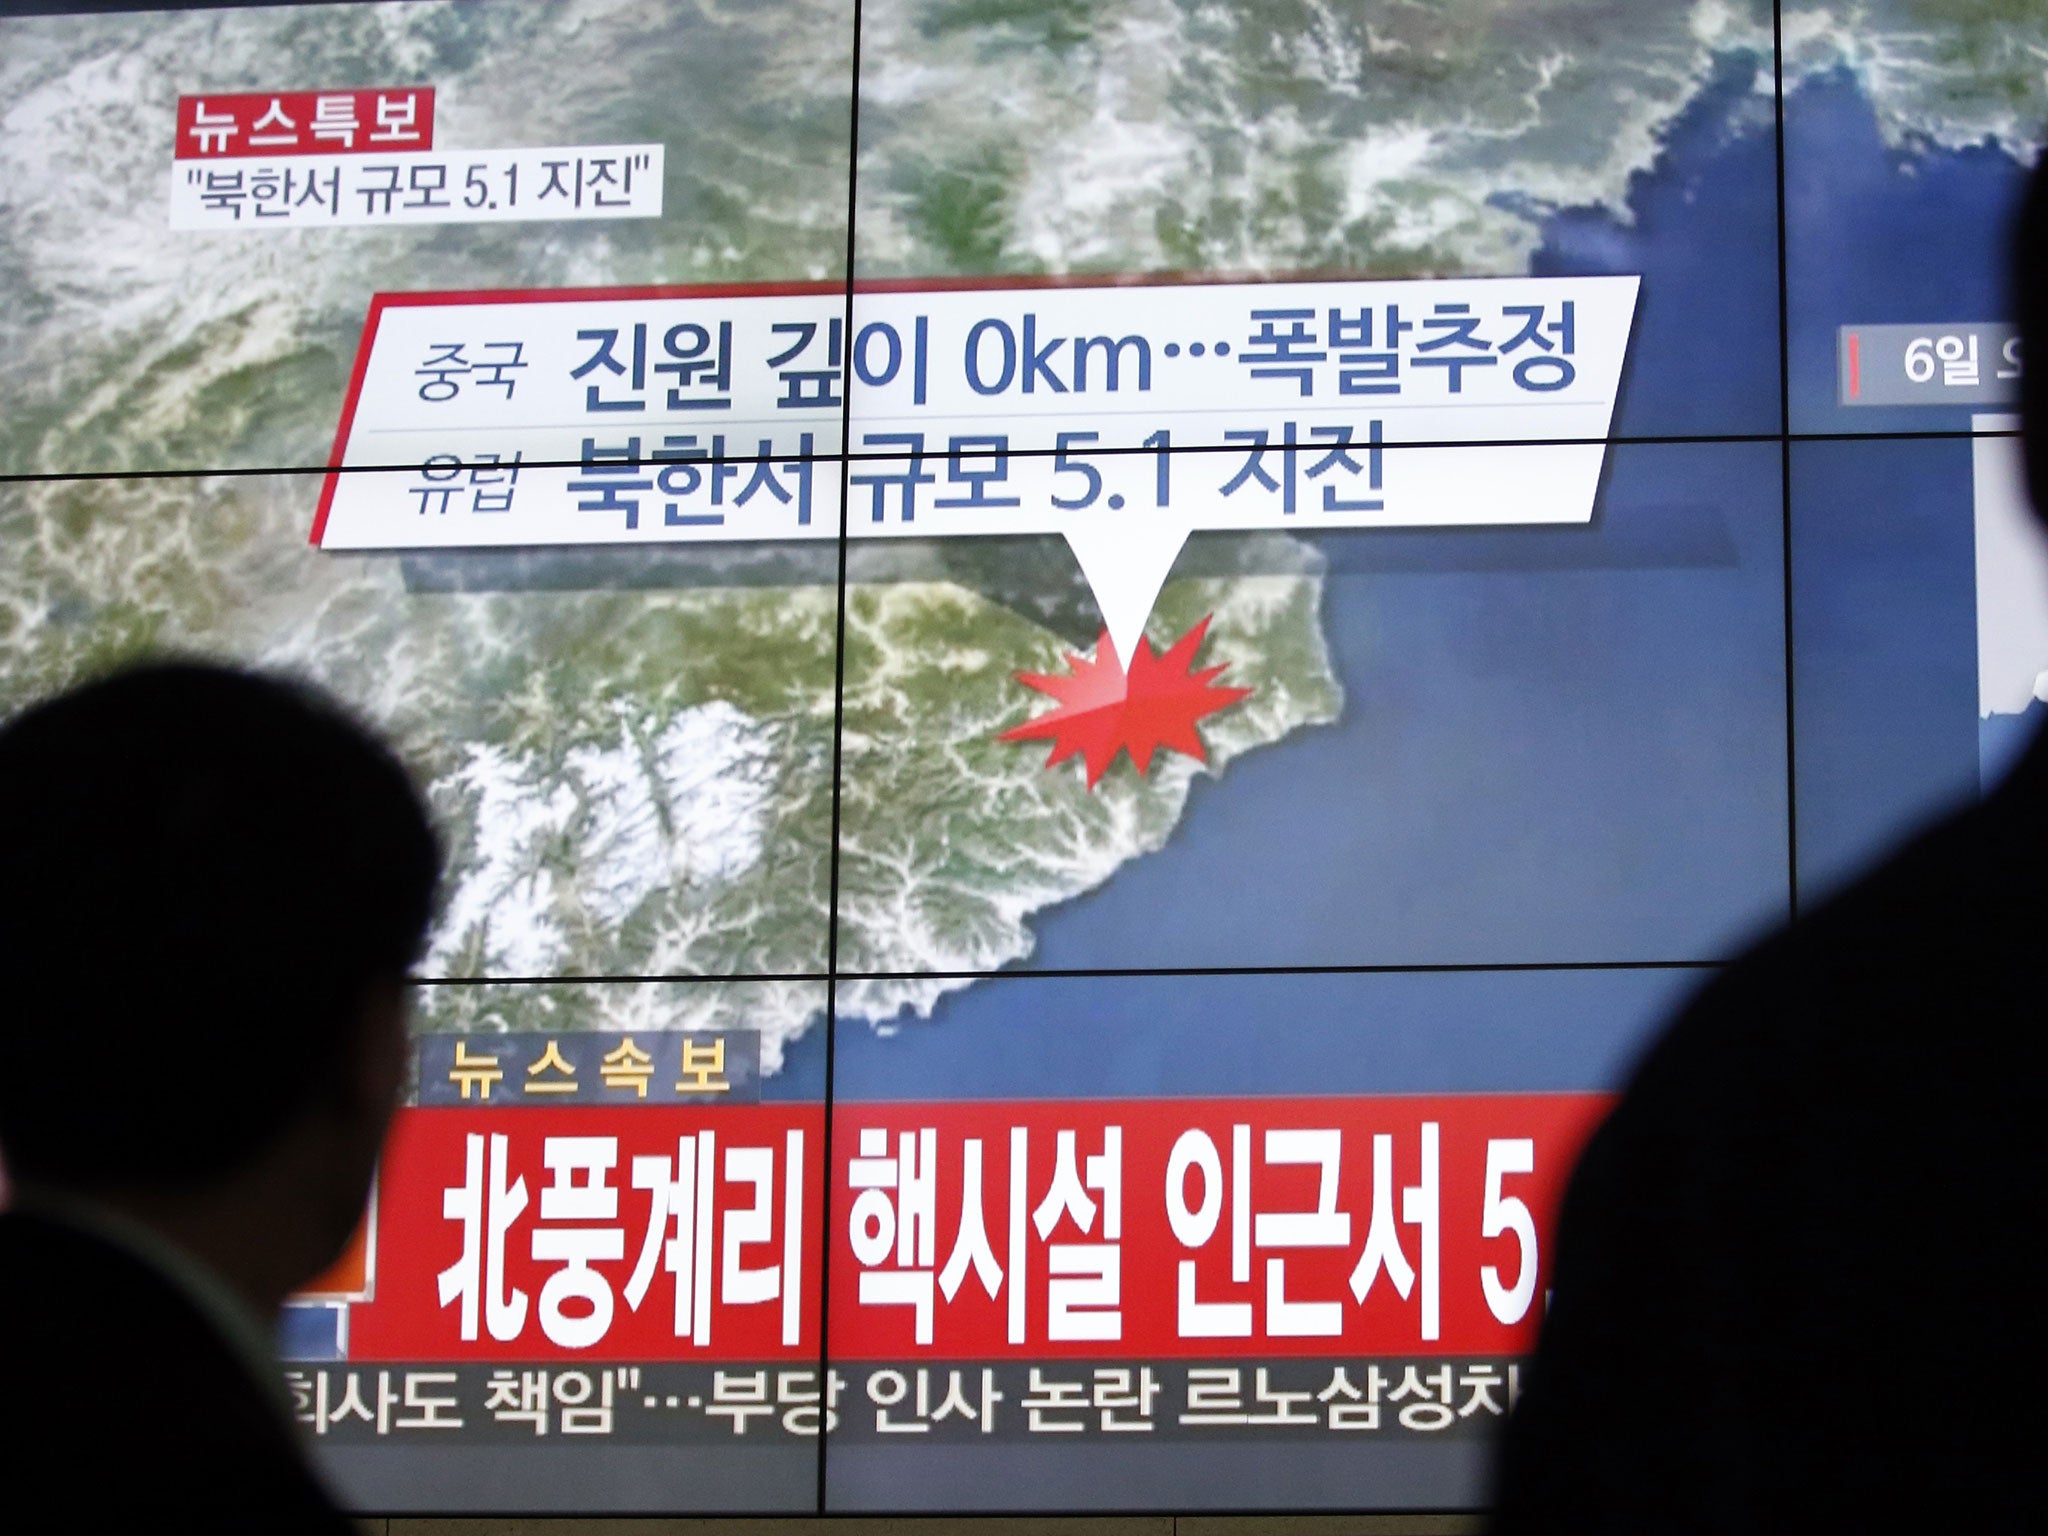 Screens in Seoul show the earthquake near North Korea's nuclear facility